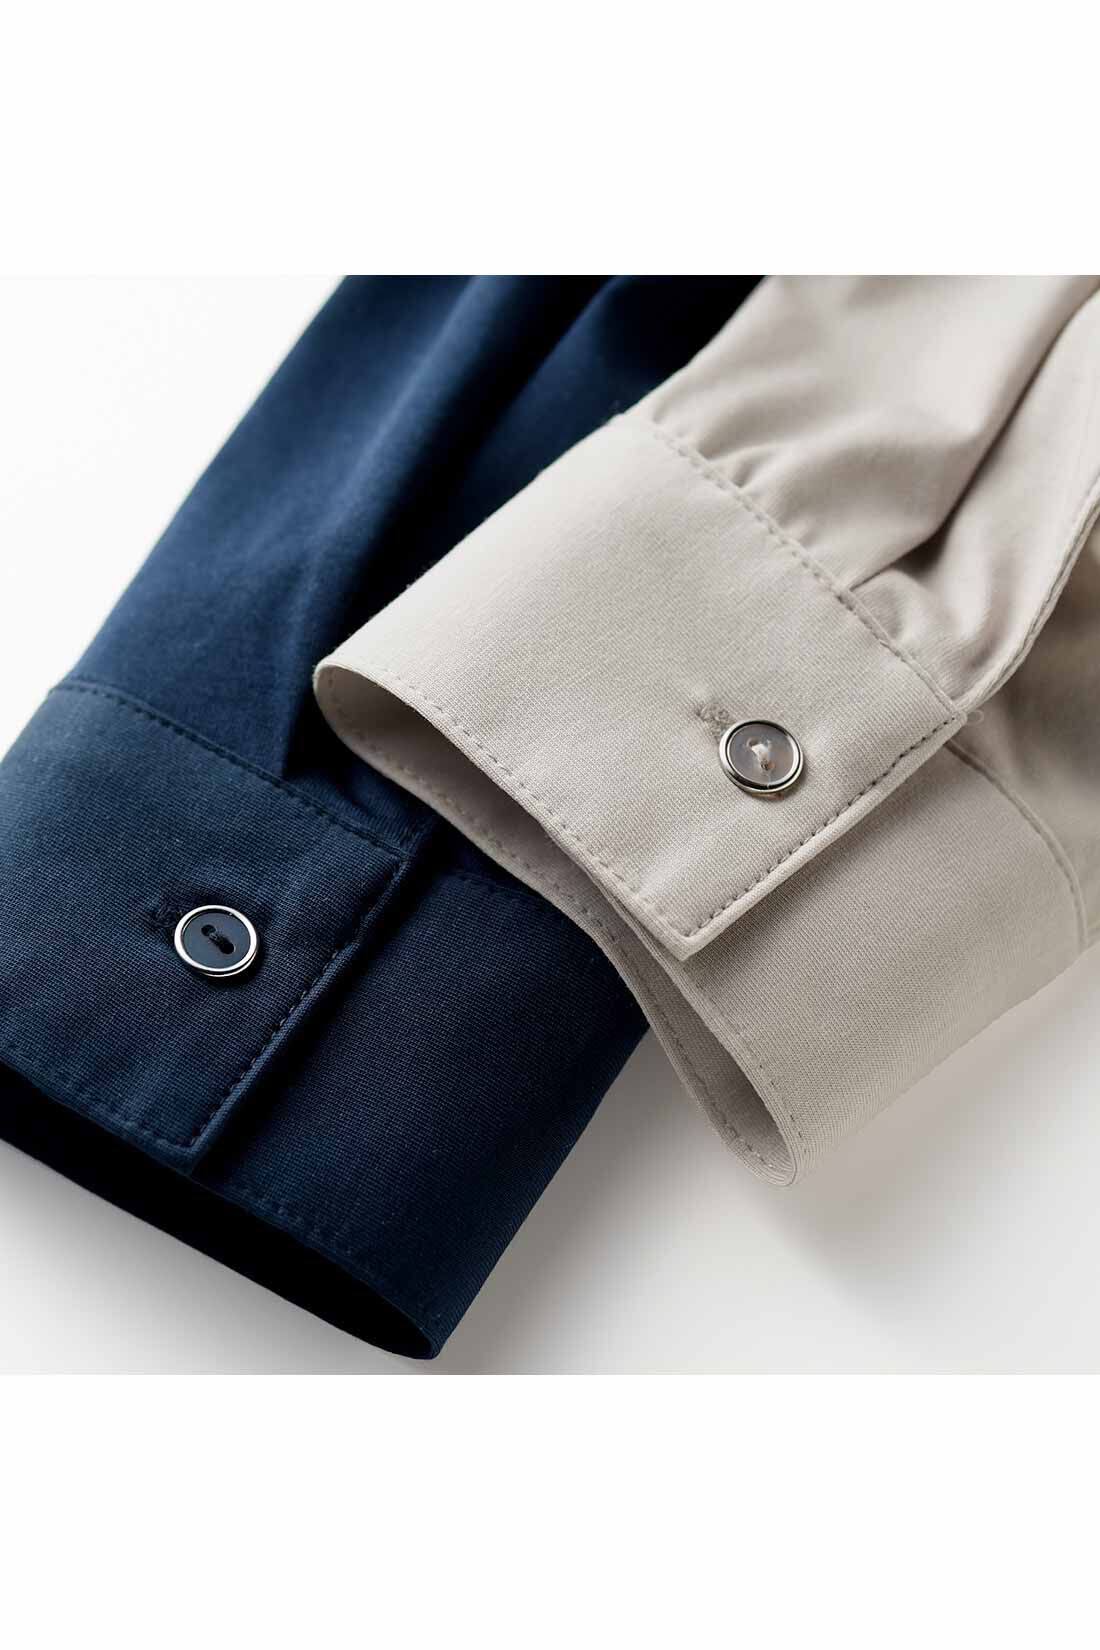 IEDIT|IEDIT[イディット]　らくちんにこなれる すっきり見えデザインのスキッパー美ノビシャツ〈ネイビー〉|身生地の色に合わせたボタンは、クール感を高めるシルバーのフレームでリッチな印象。